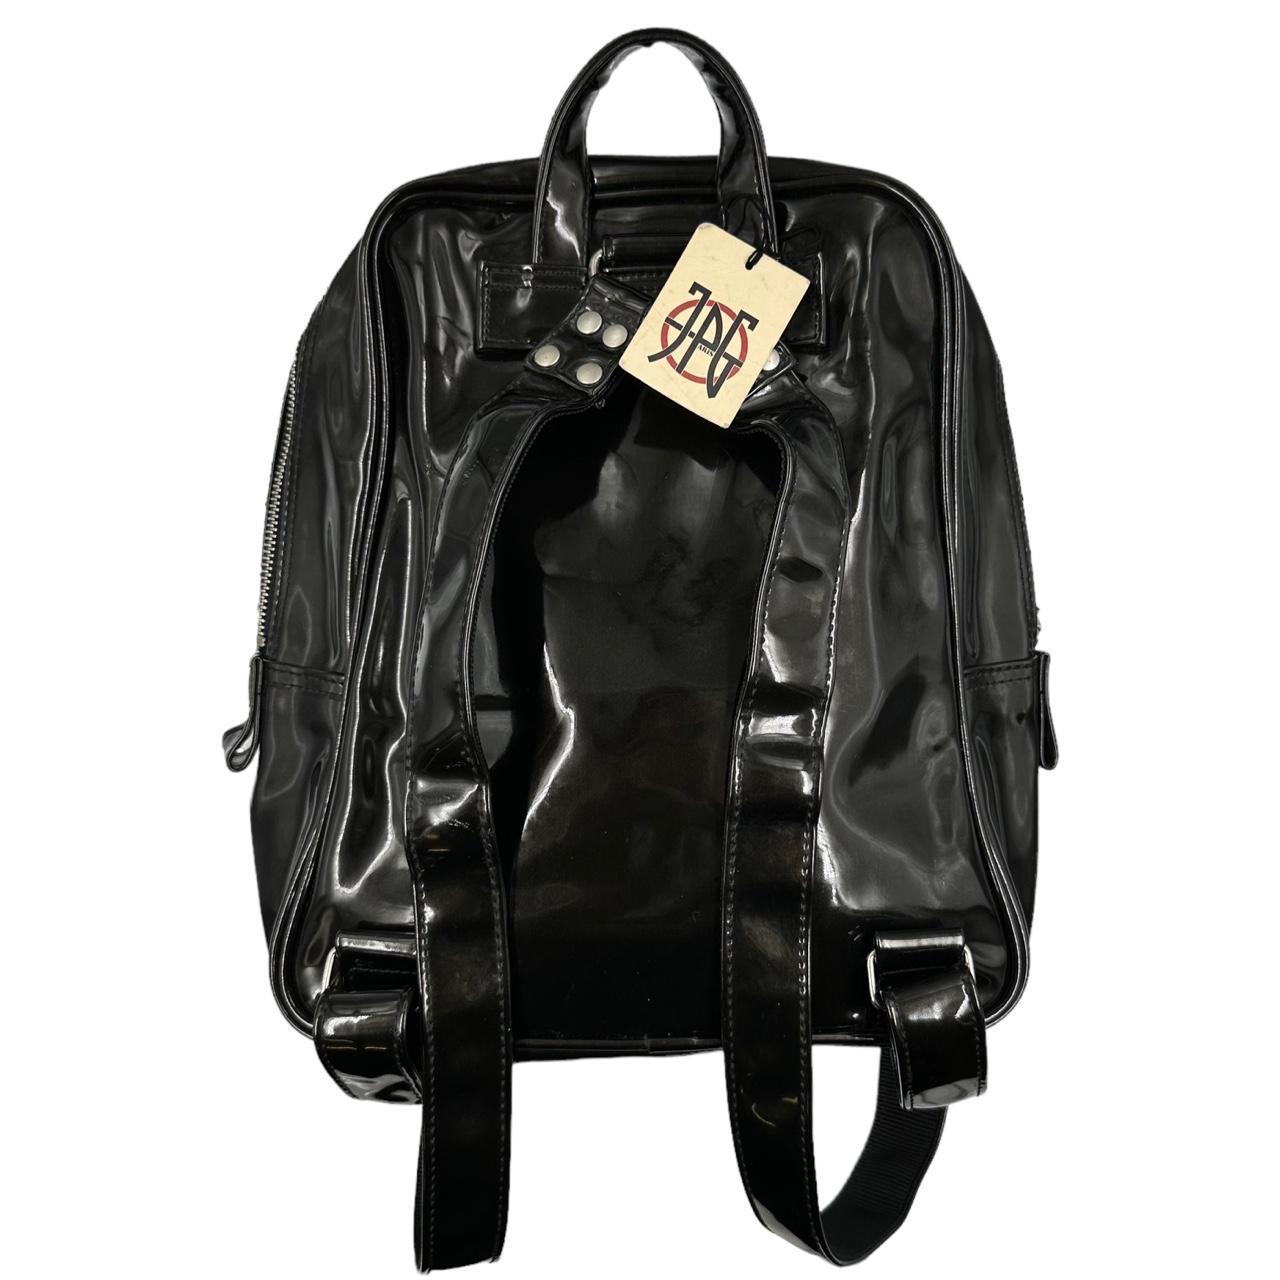 Vintage JPG Jean Paul Gaultier Backpack - Known Source